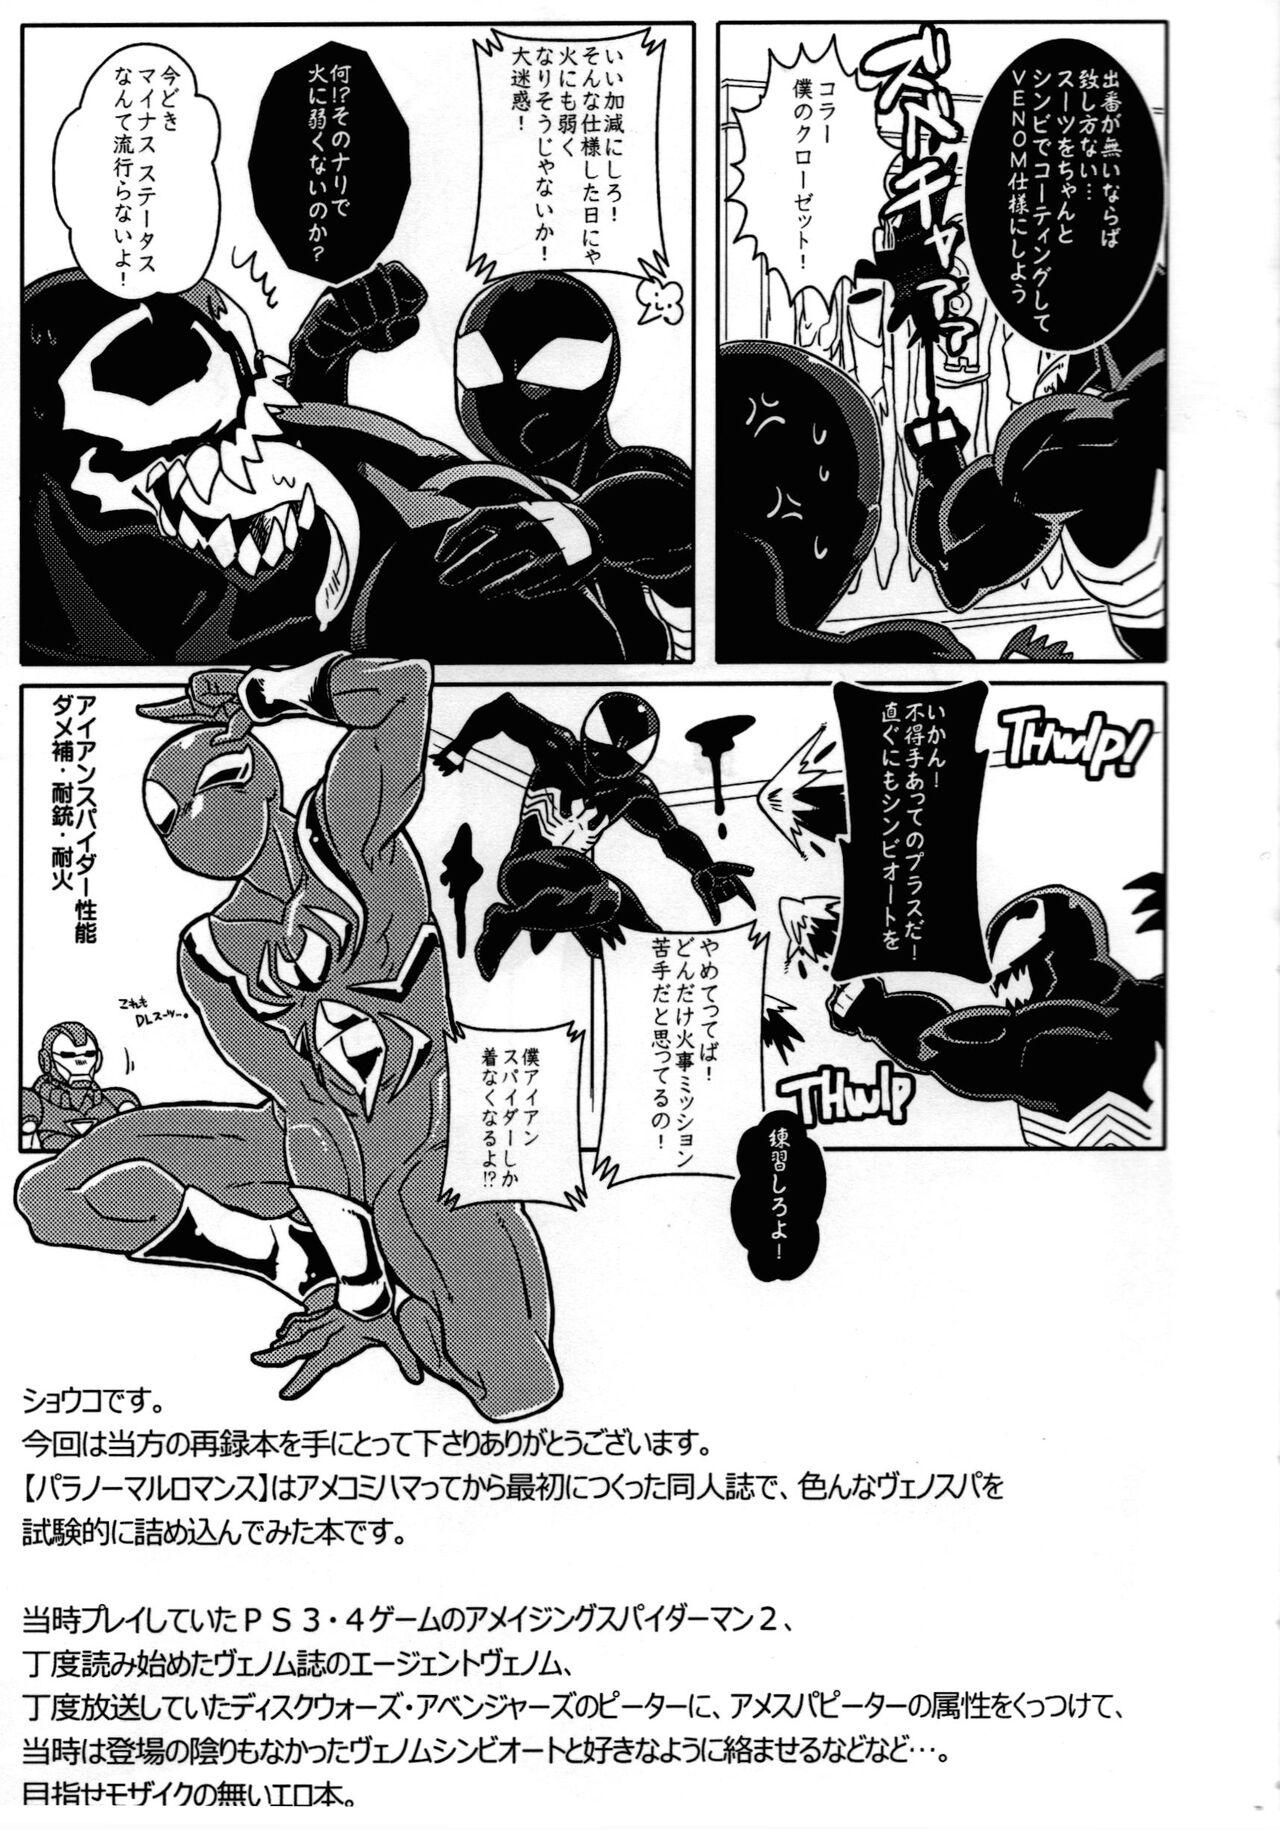 Analsex Spider‐Man REMIX - Spider man Hardcore Porn - Page 7